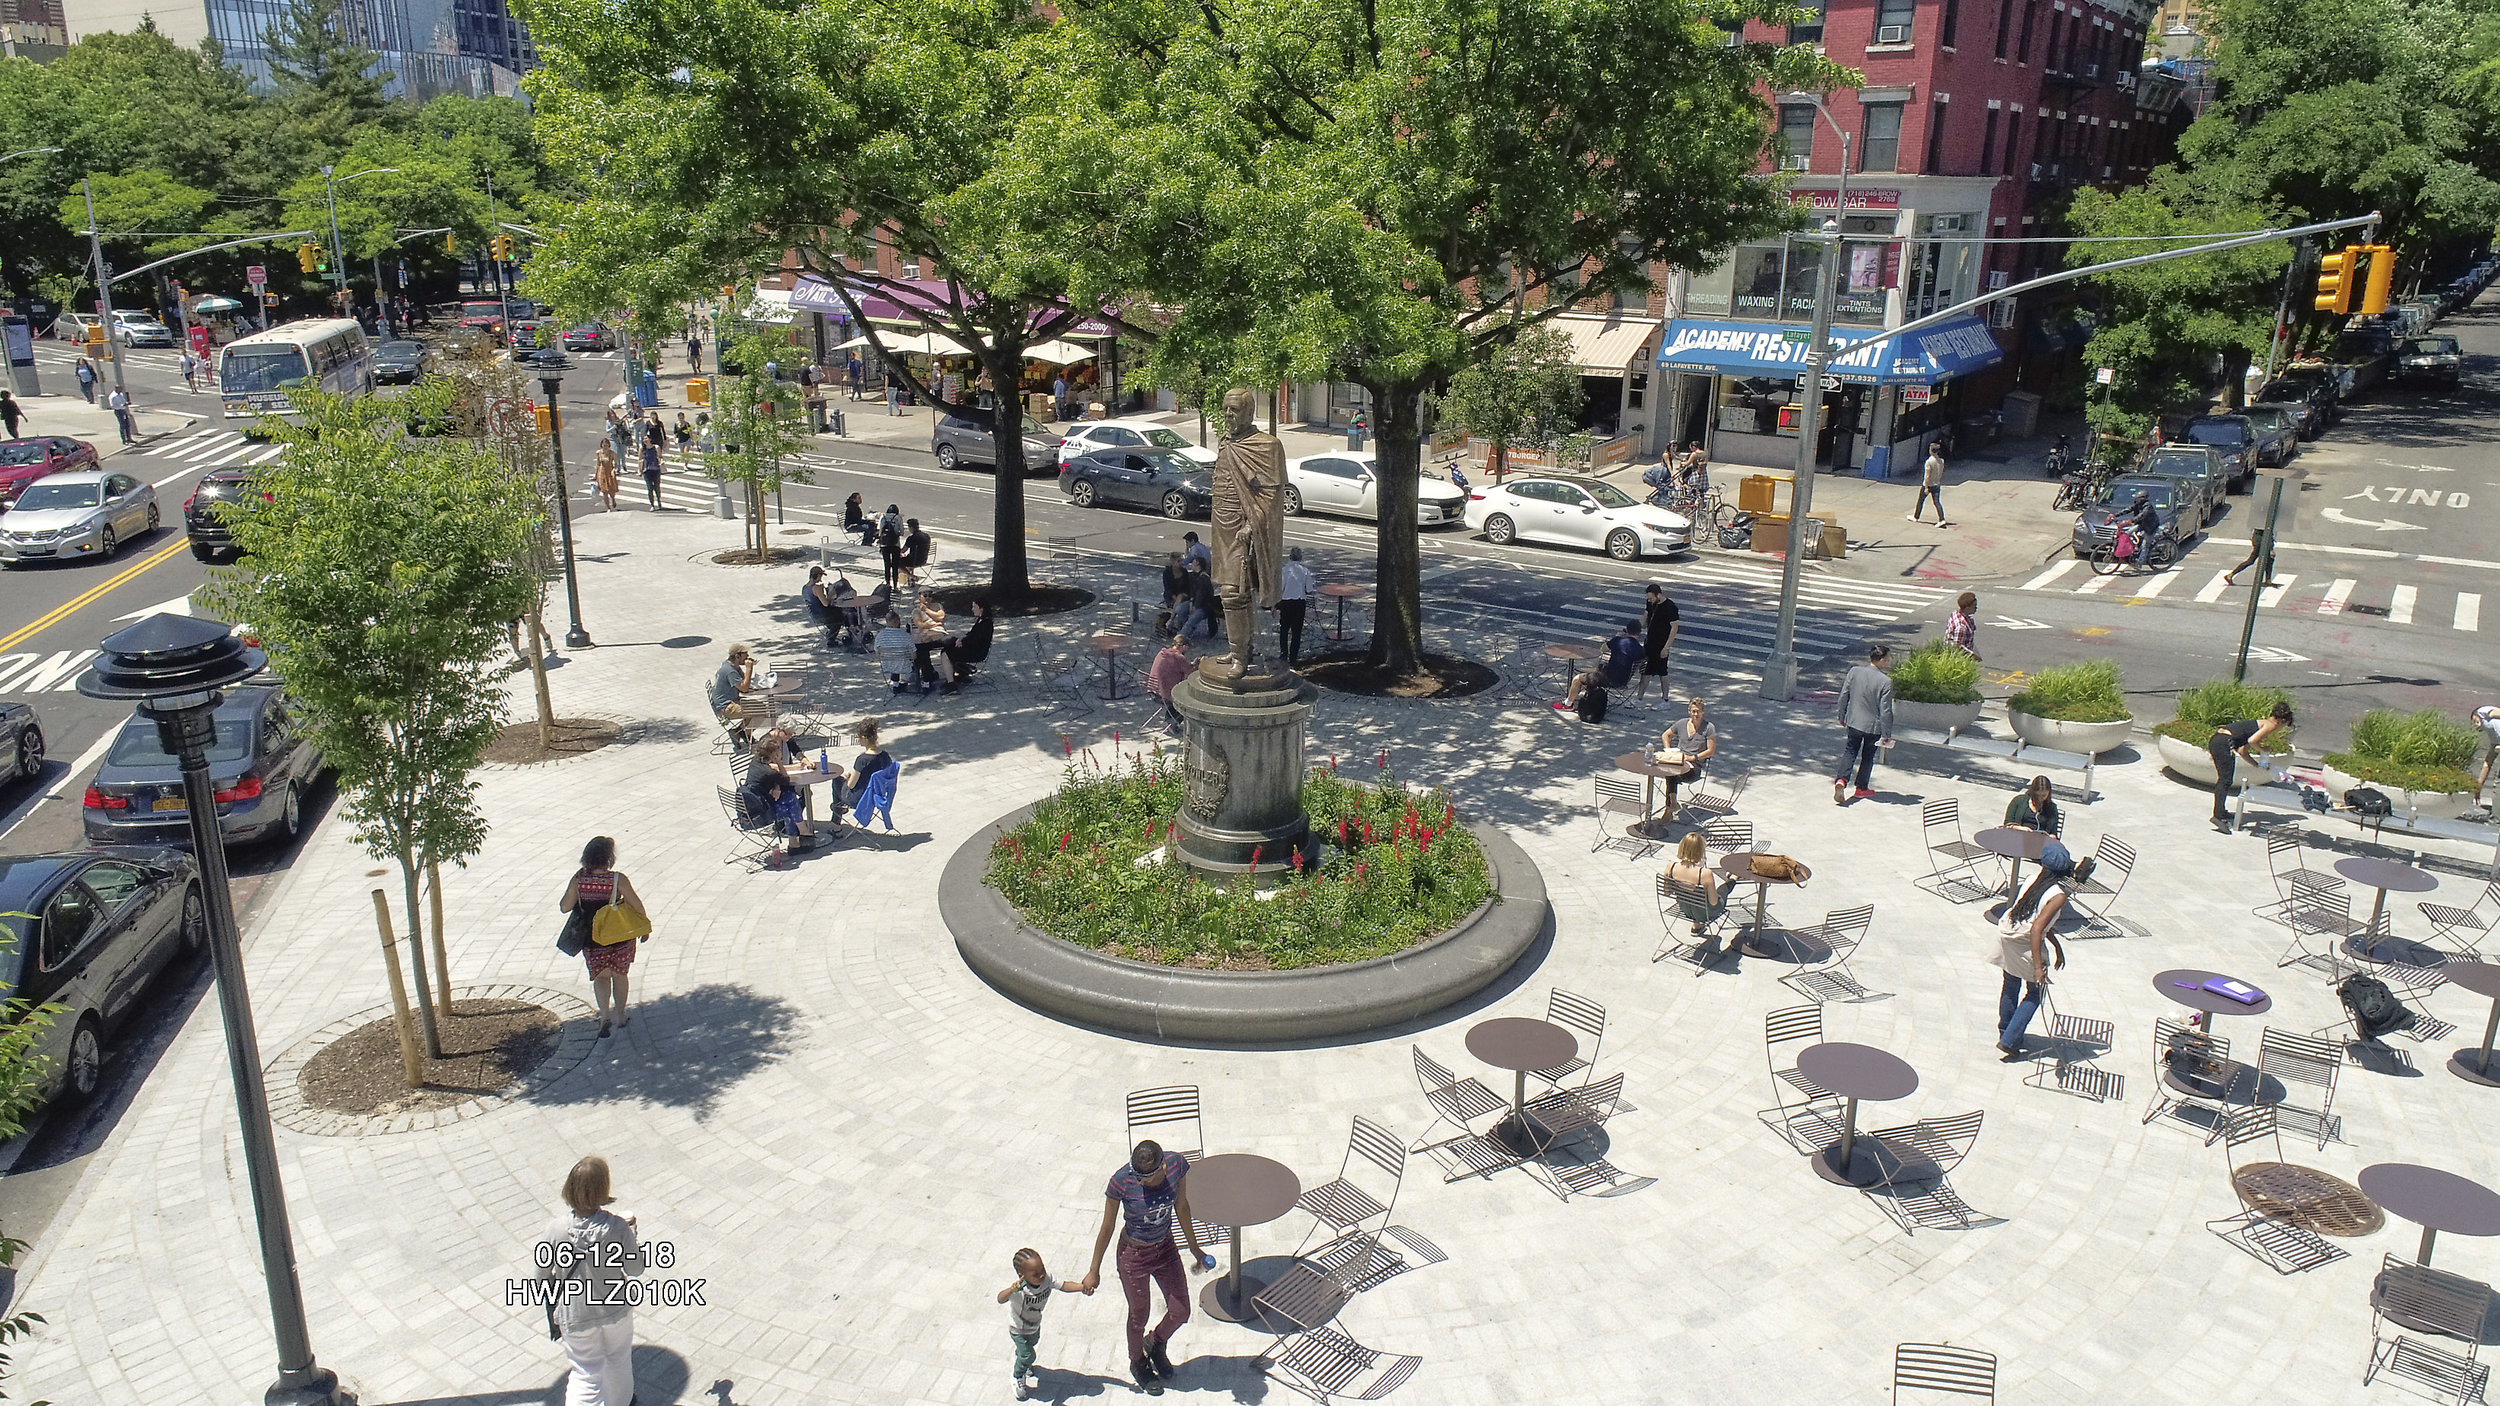 Fowler Square Plaza, Brooklyn NY